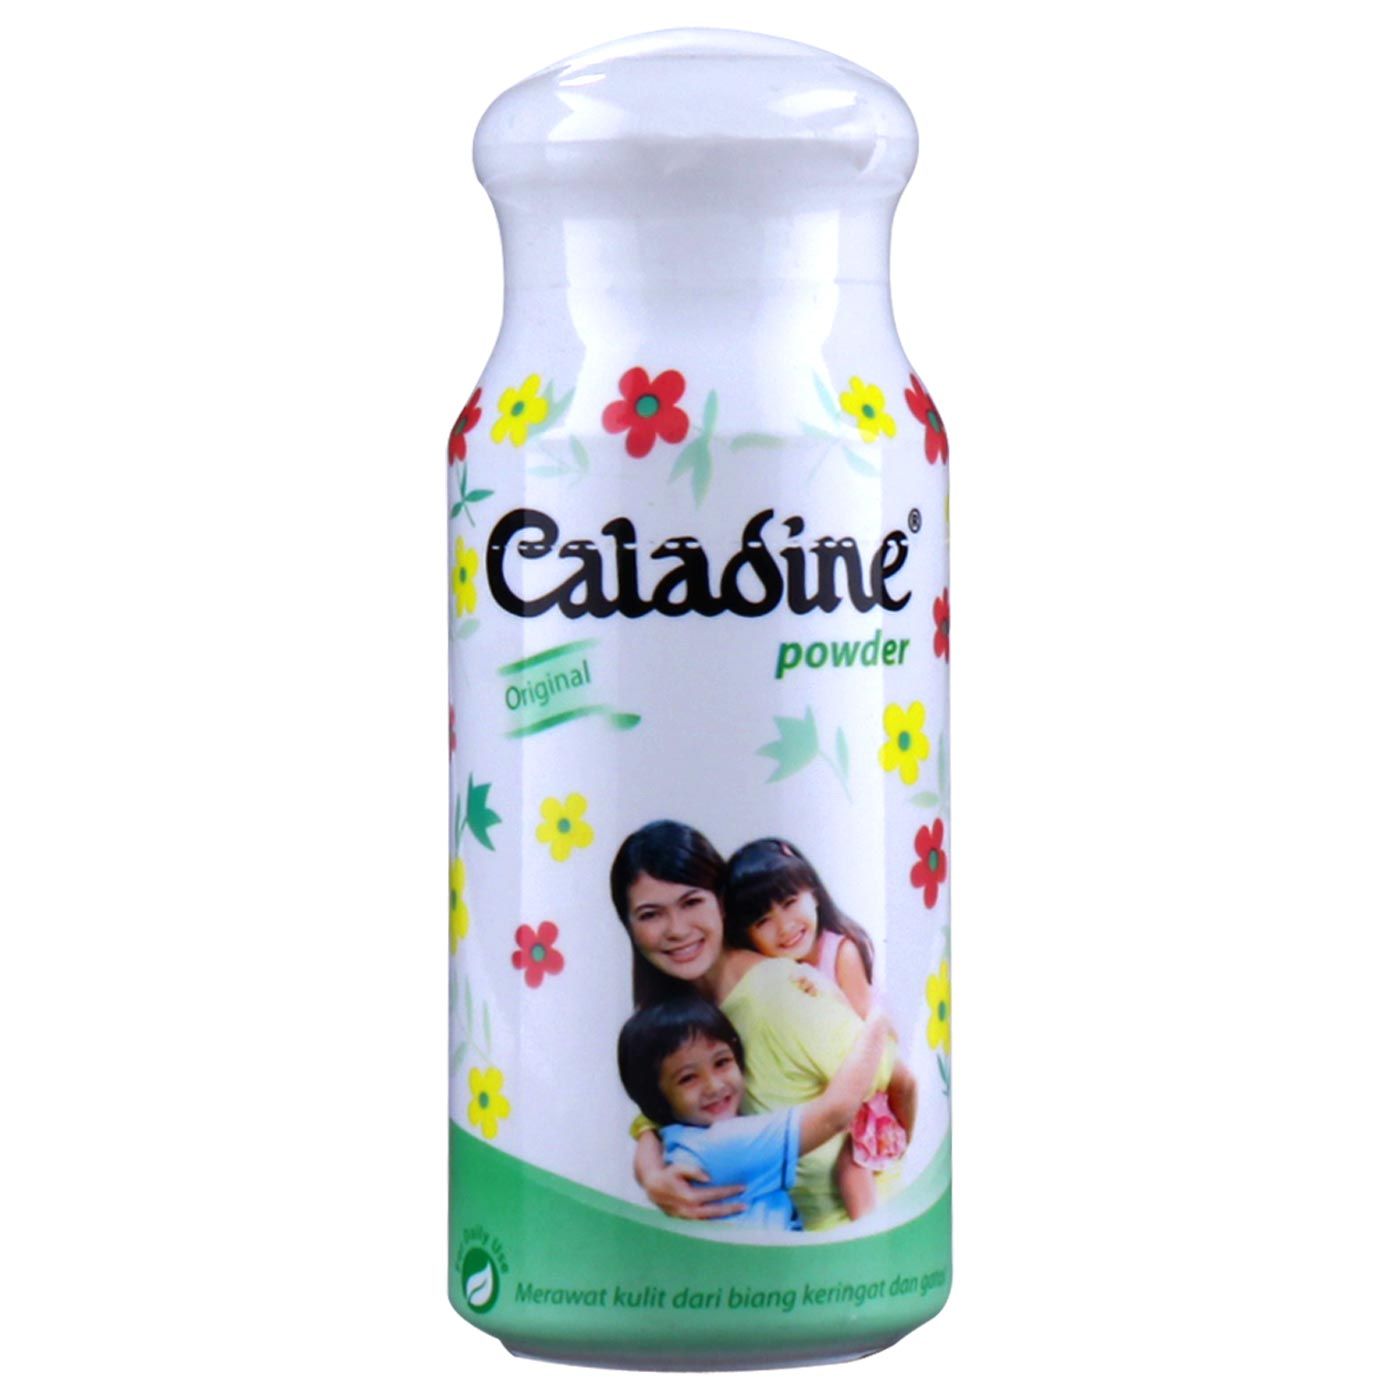 Caladine Powder Original 60Gr - 1